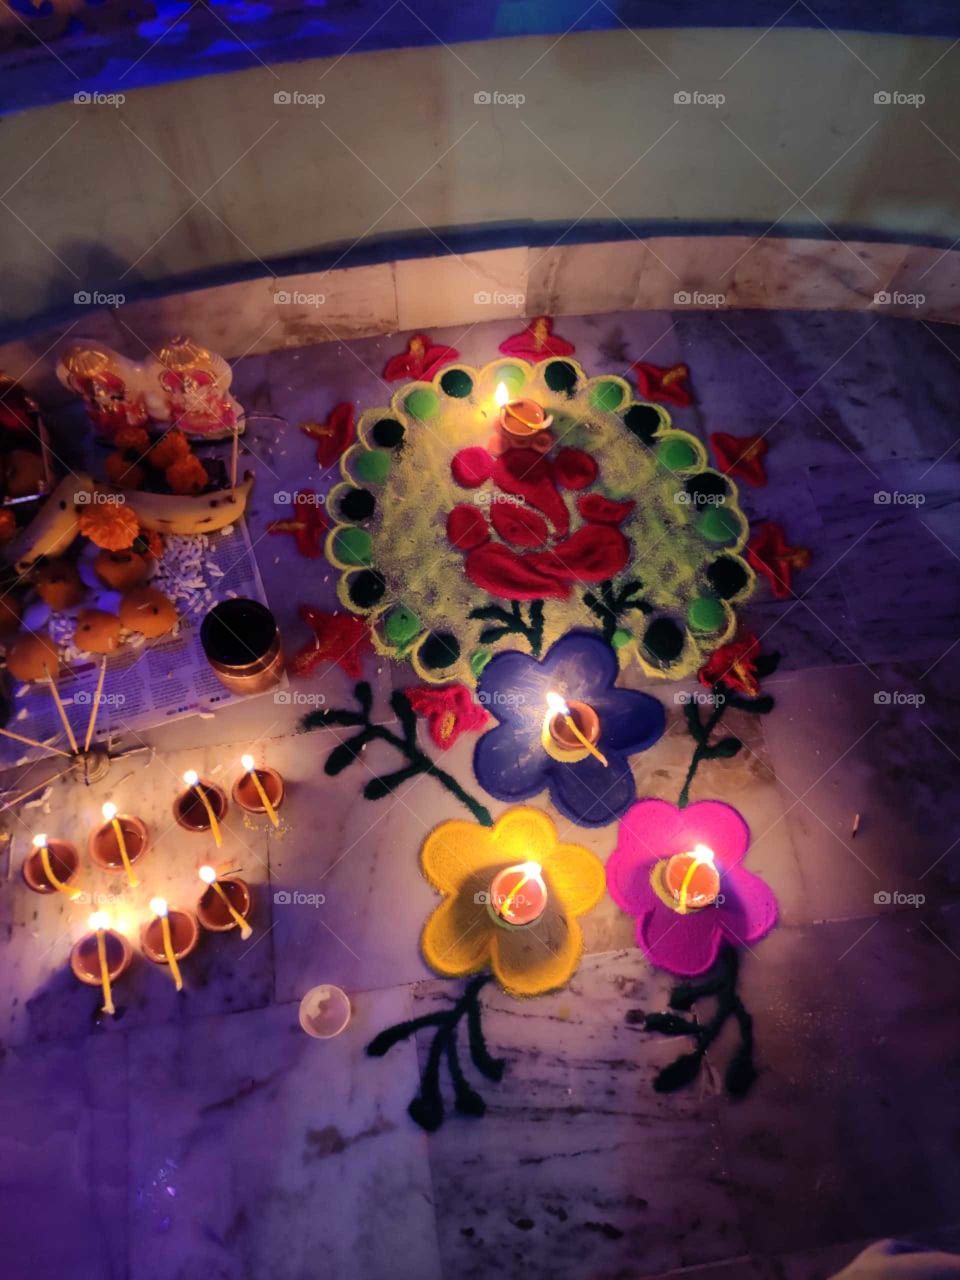 rangoli on Diwali in india